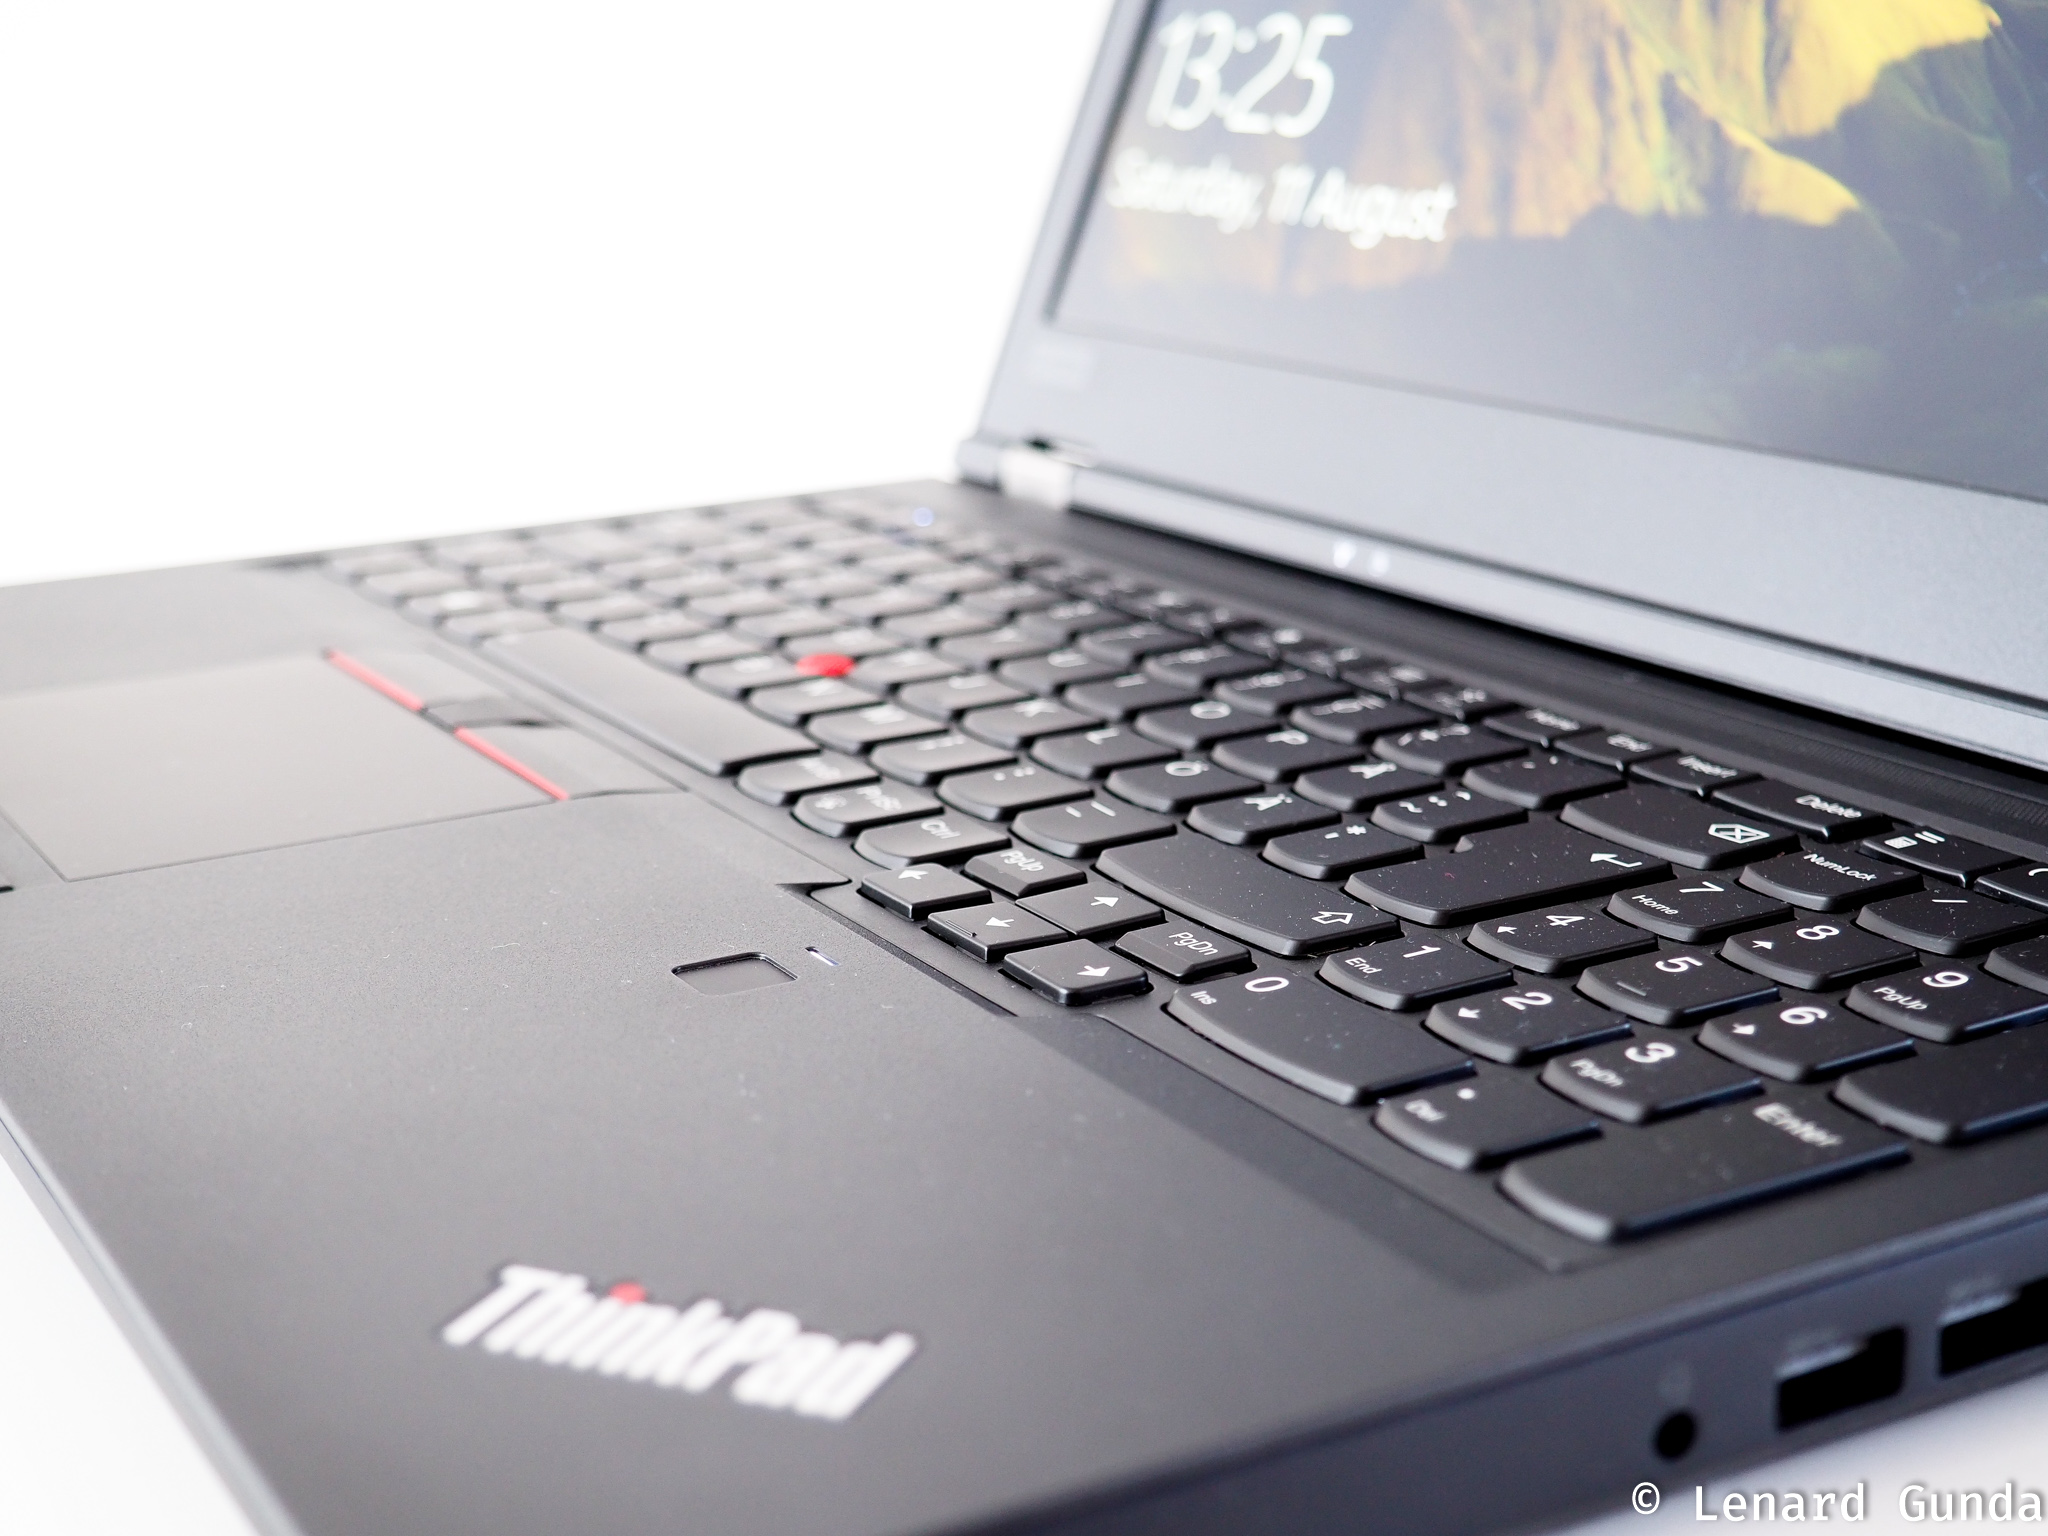 ThinkPad P52 hands on review - LenardGunda.com